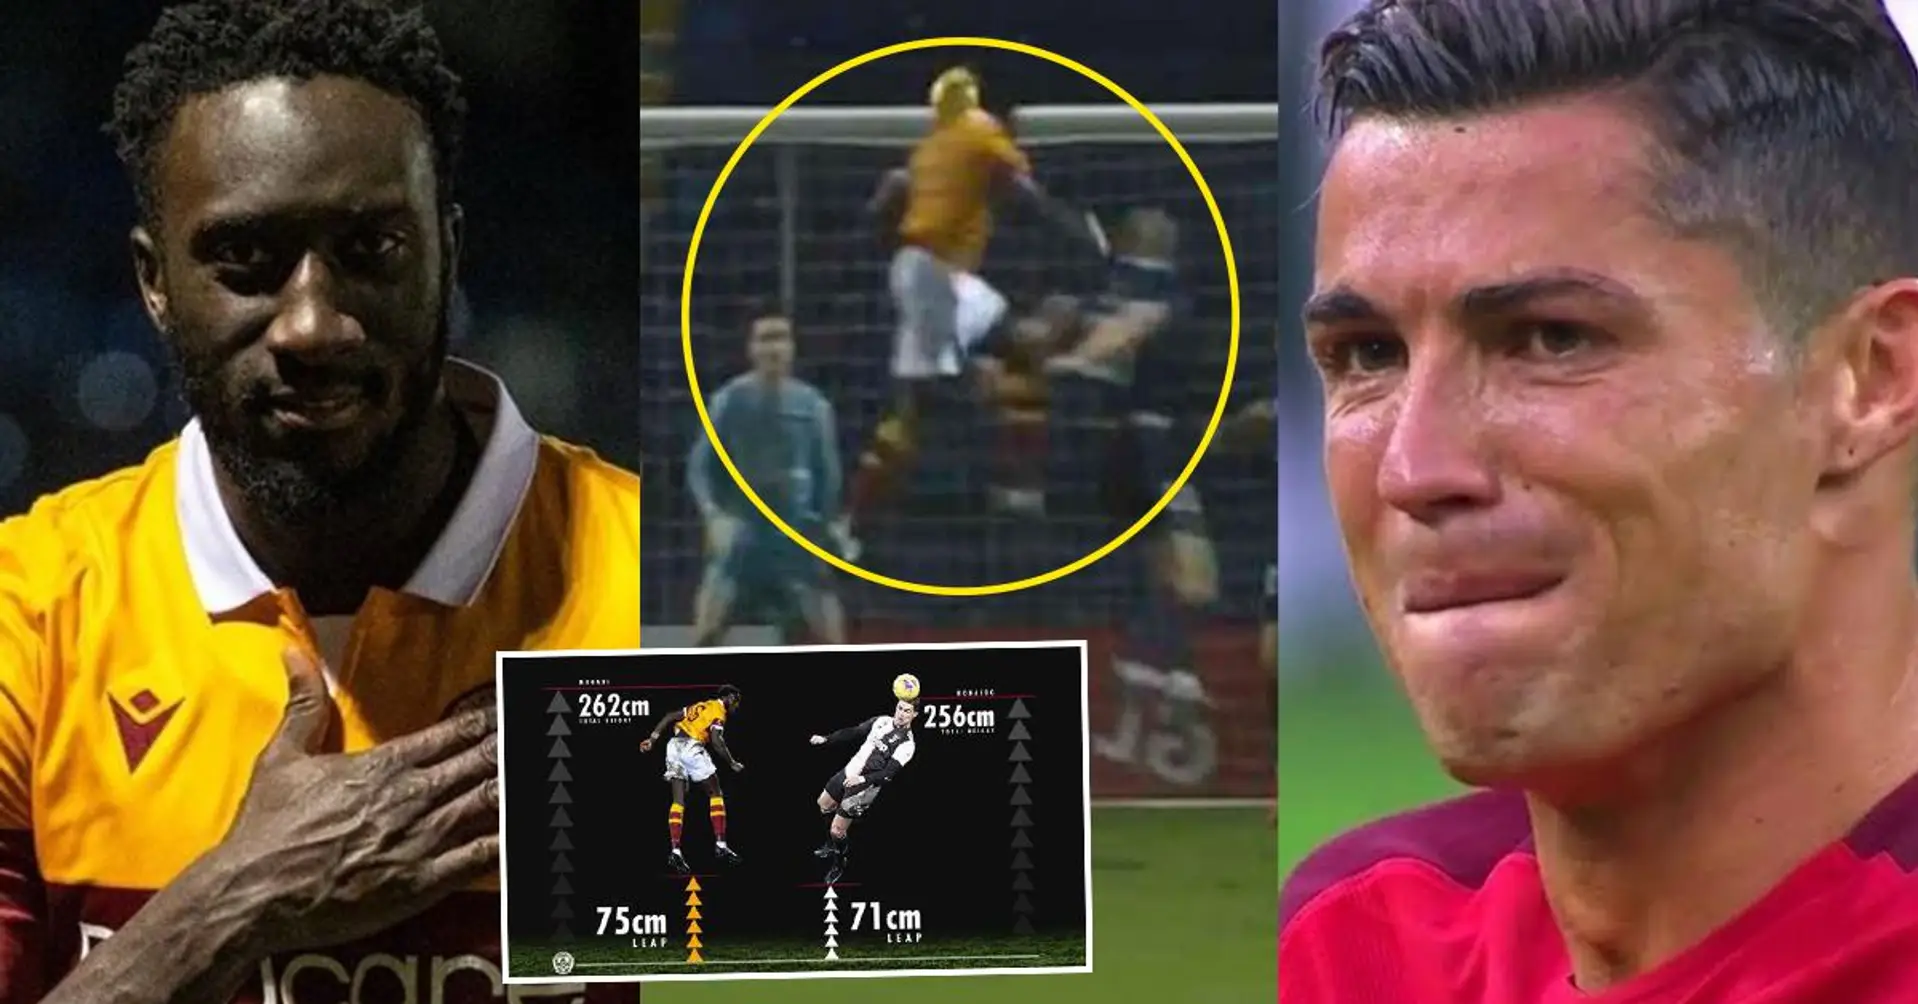 Star aus Uganda knackt Cristiano Ronaldos 2,56-Meter-Sprungrekord: "Ich werde CR7 mitteilen: "Bro, du musst dein Spiel verbessern"